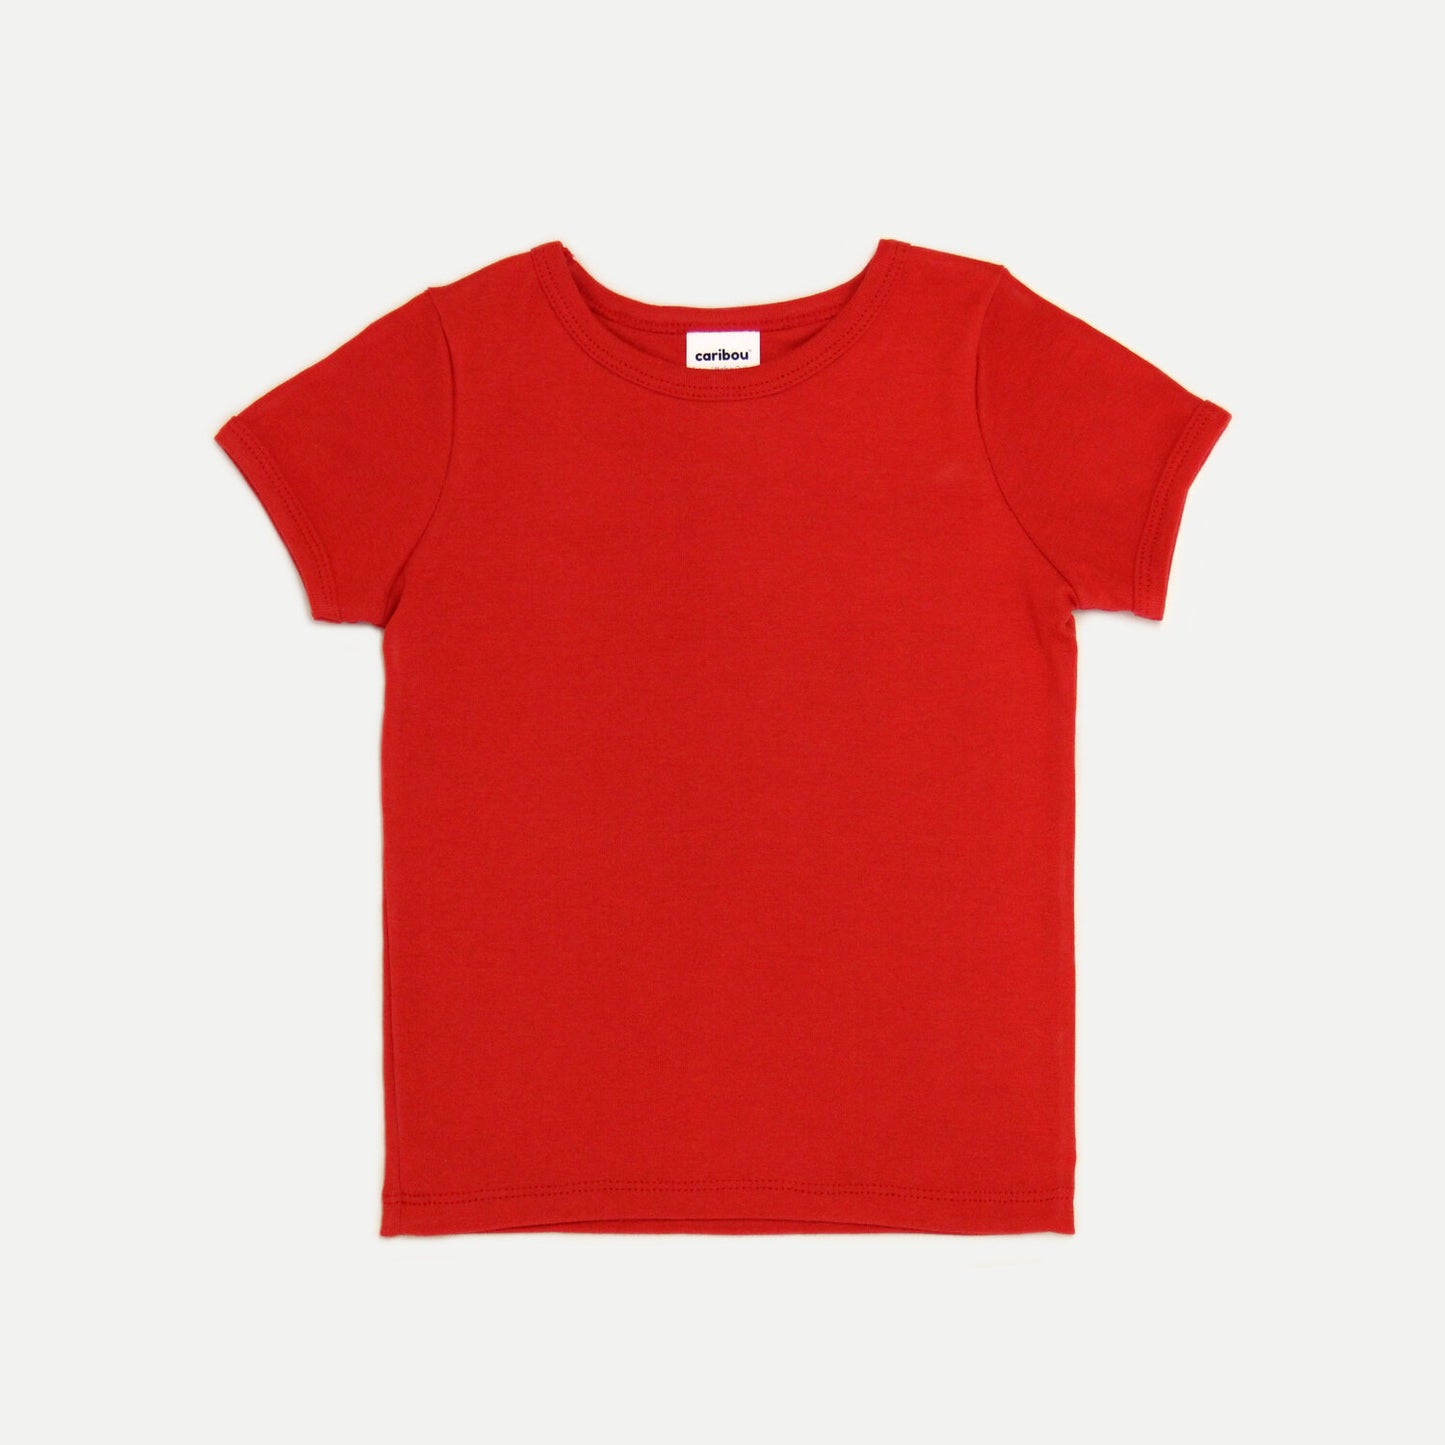 T-shirt enfant 100% coton bio - Caribou